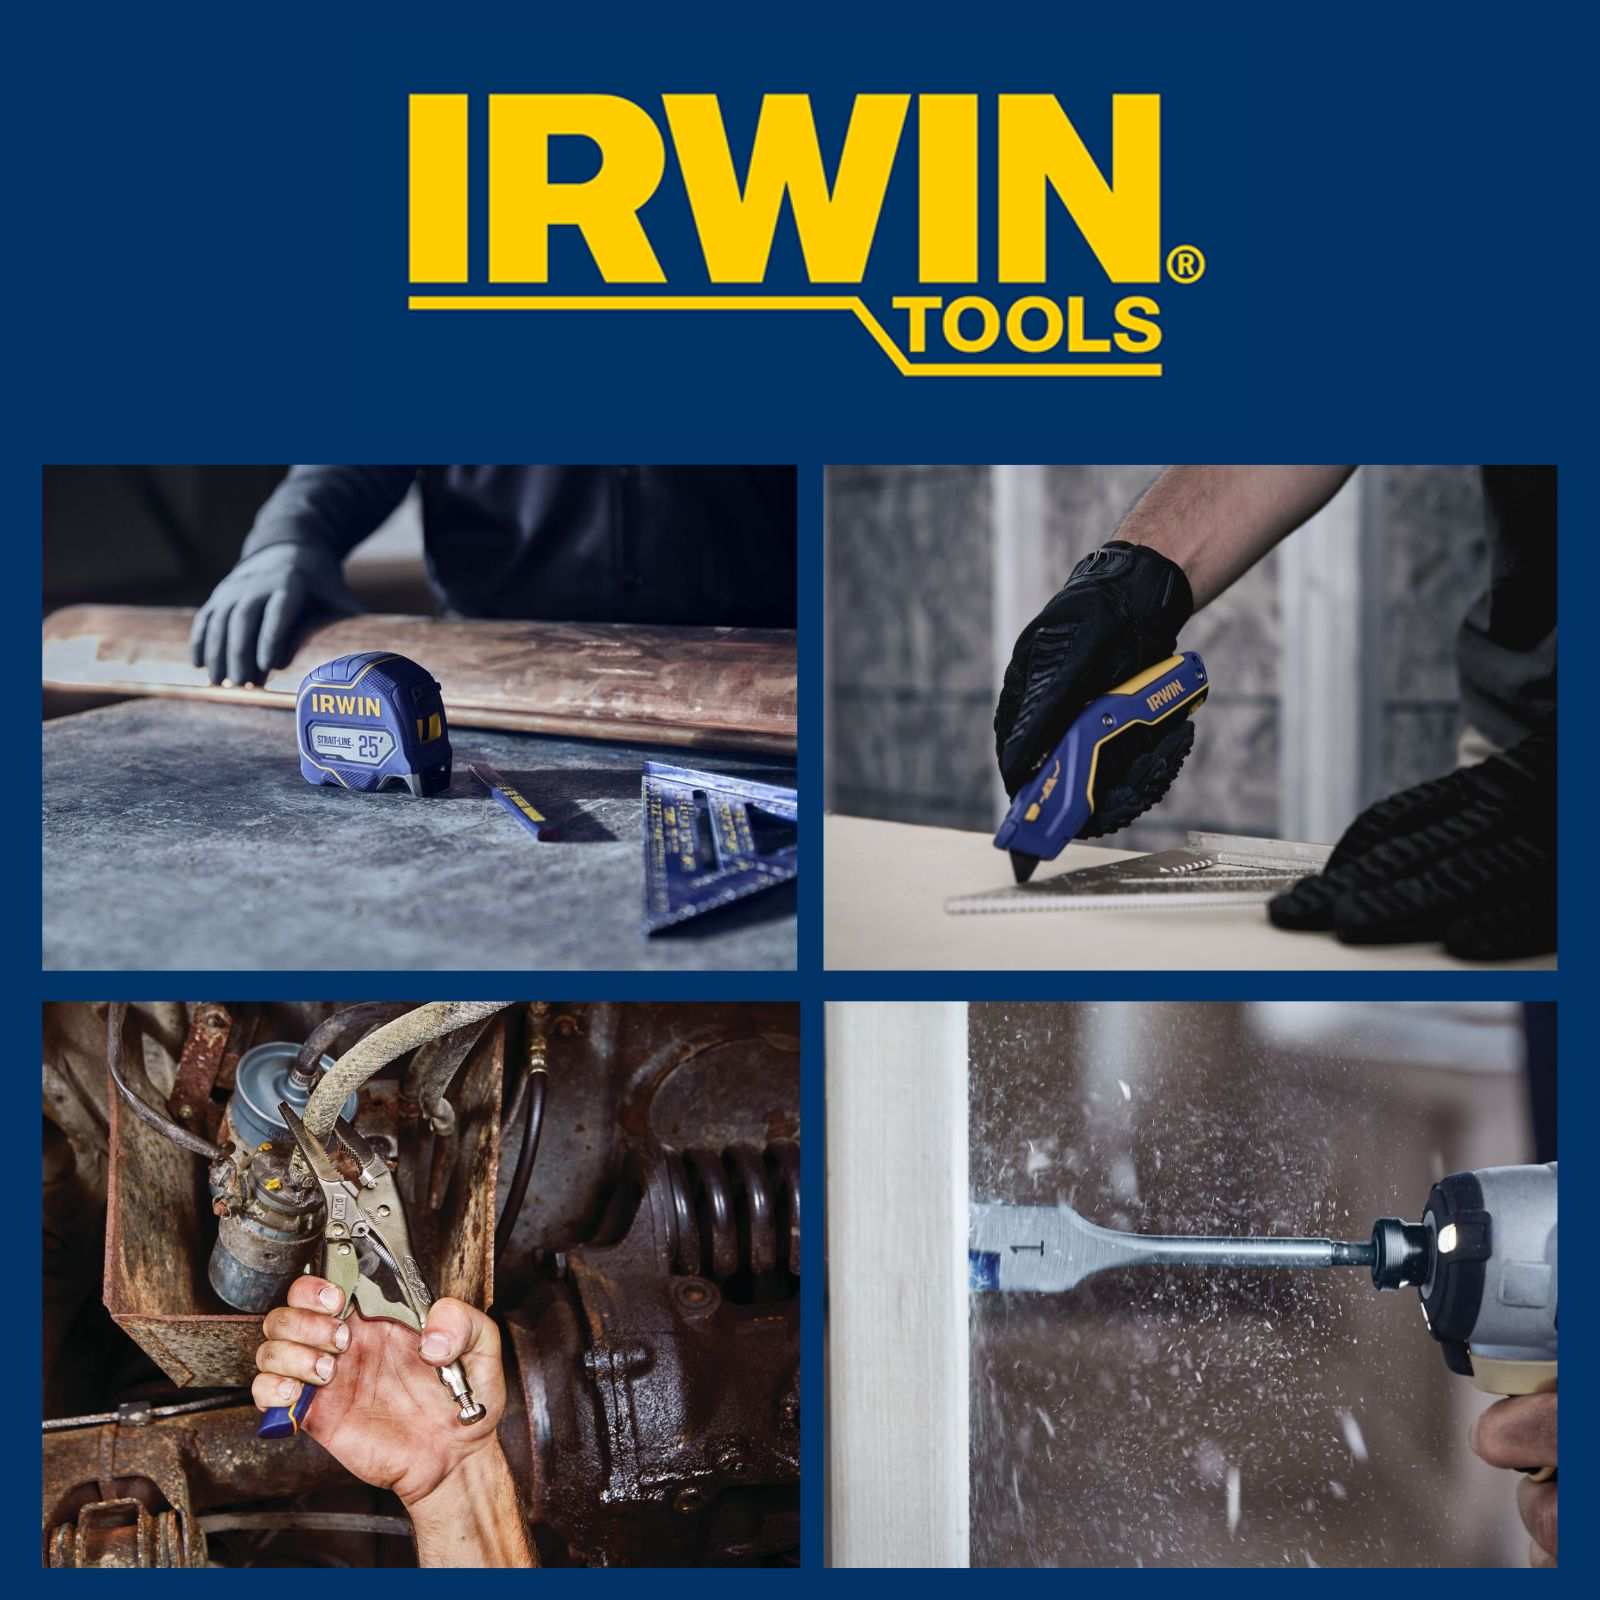 Giới thiệu về thương hiệu IRWIN